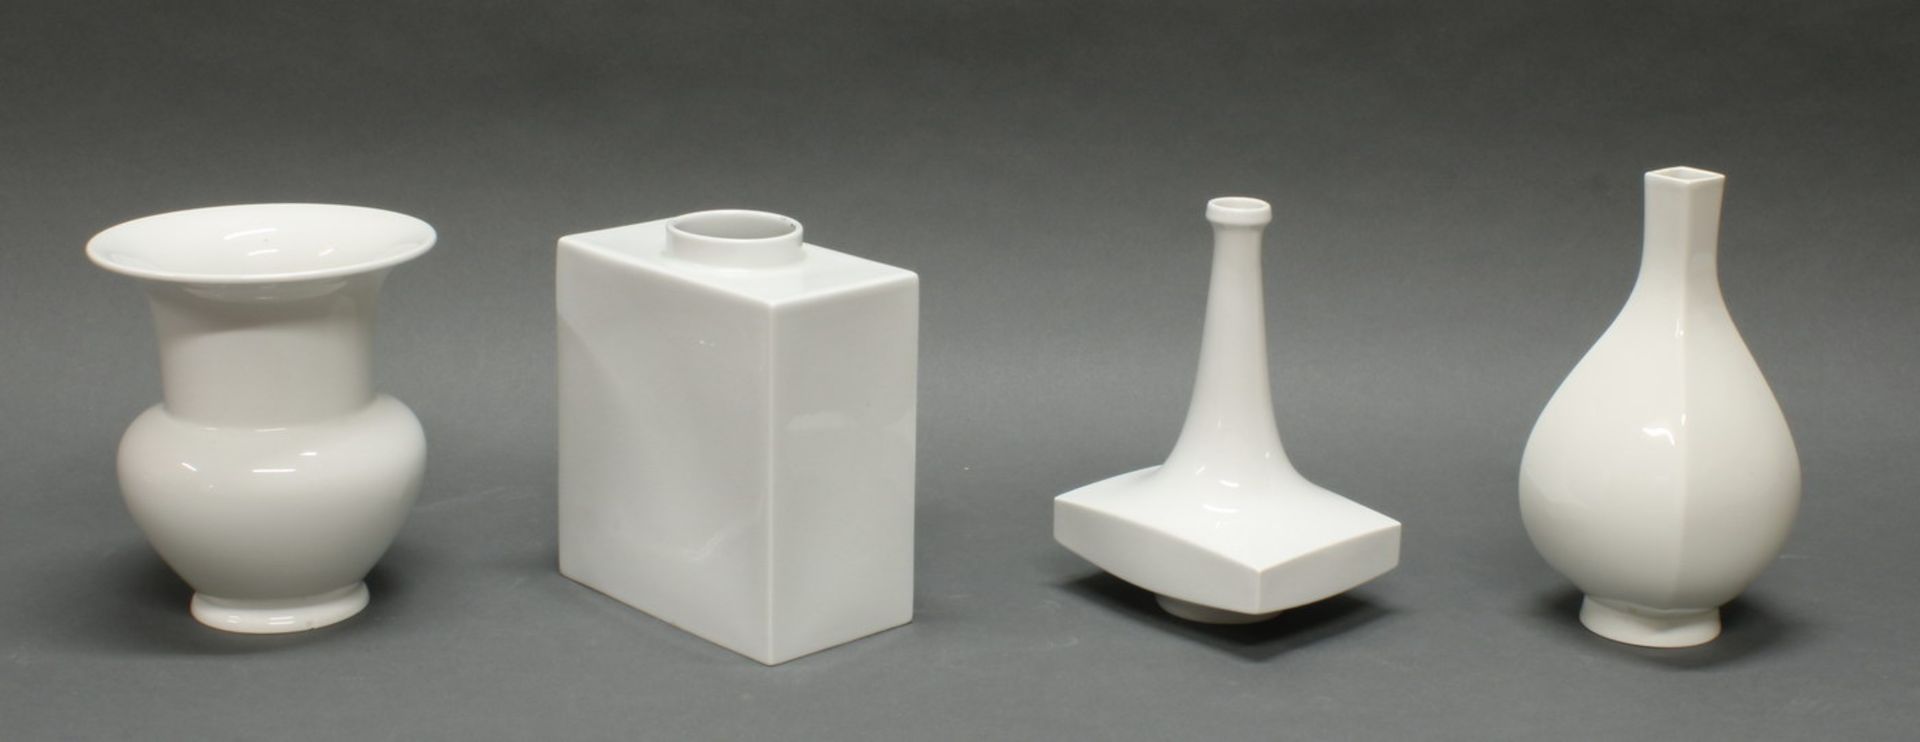 4 Vasen, KPM Berlin, Weißporzellan, diverse Formen, 19-23.5 cm hoch, Balustervase mit Chip